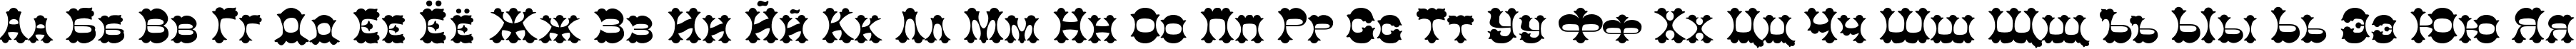 Пример написания русского алфавита шрифтом Colt TYGRA